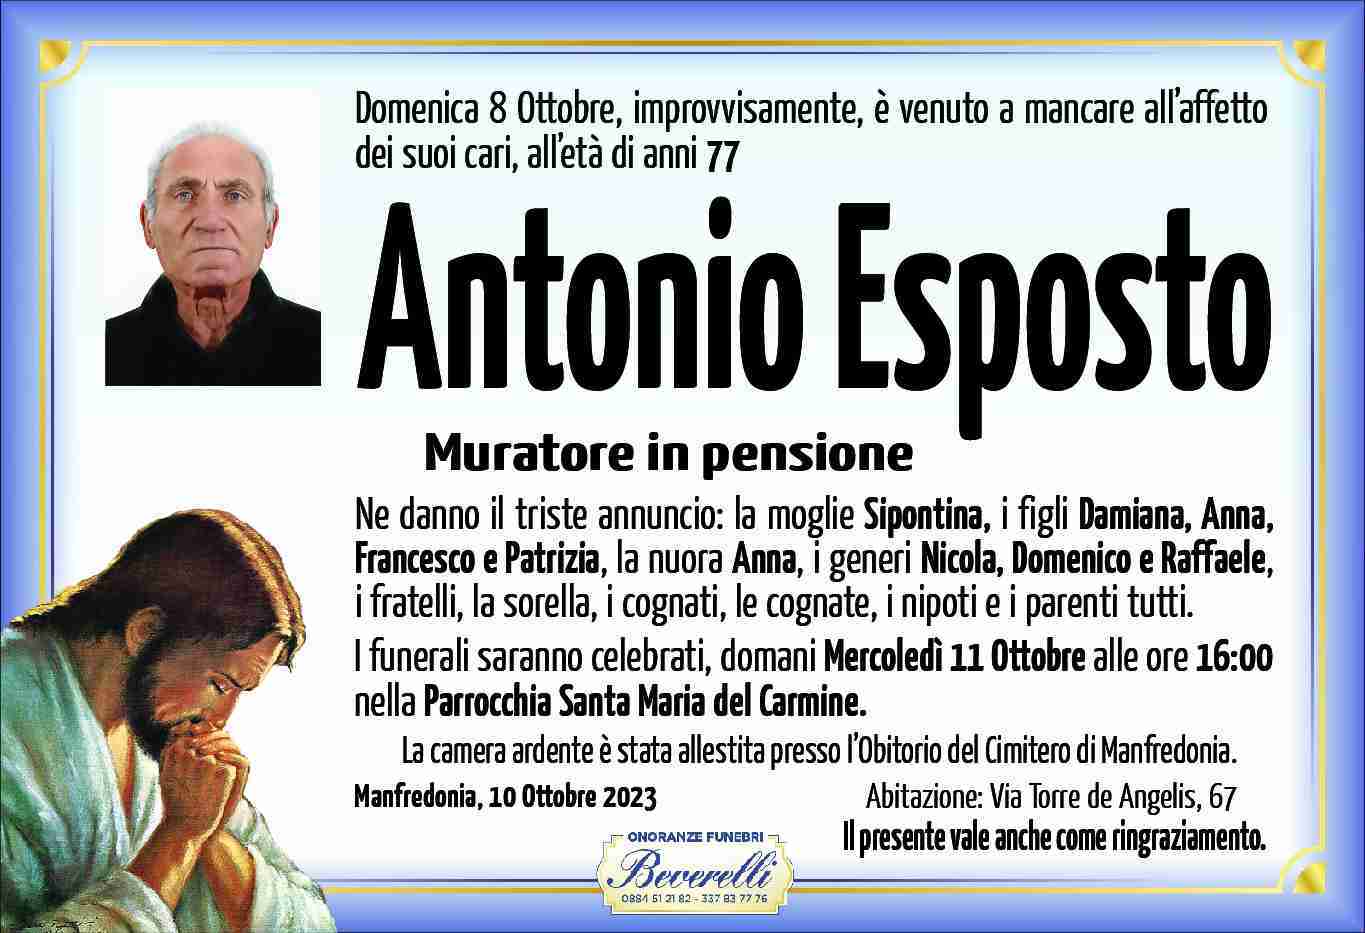 Antonio Esposto